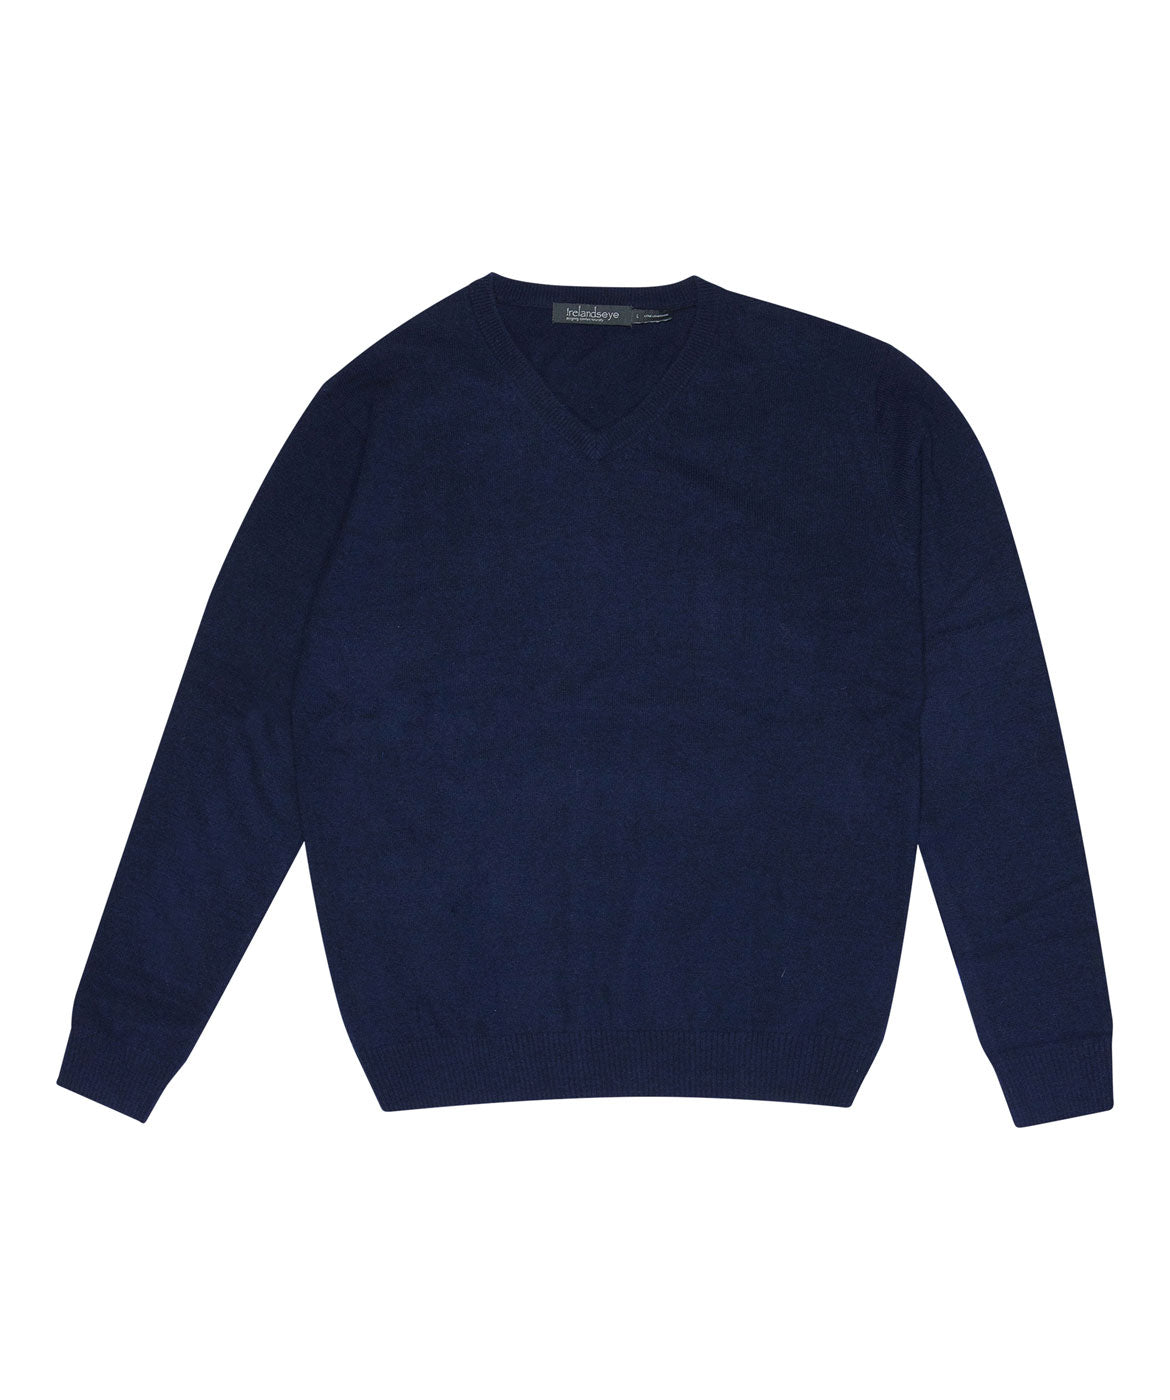 IrelandsEye Knitwear Easy Care V Neck Wool Sweater Navy